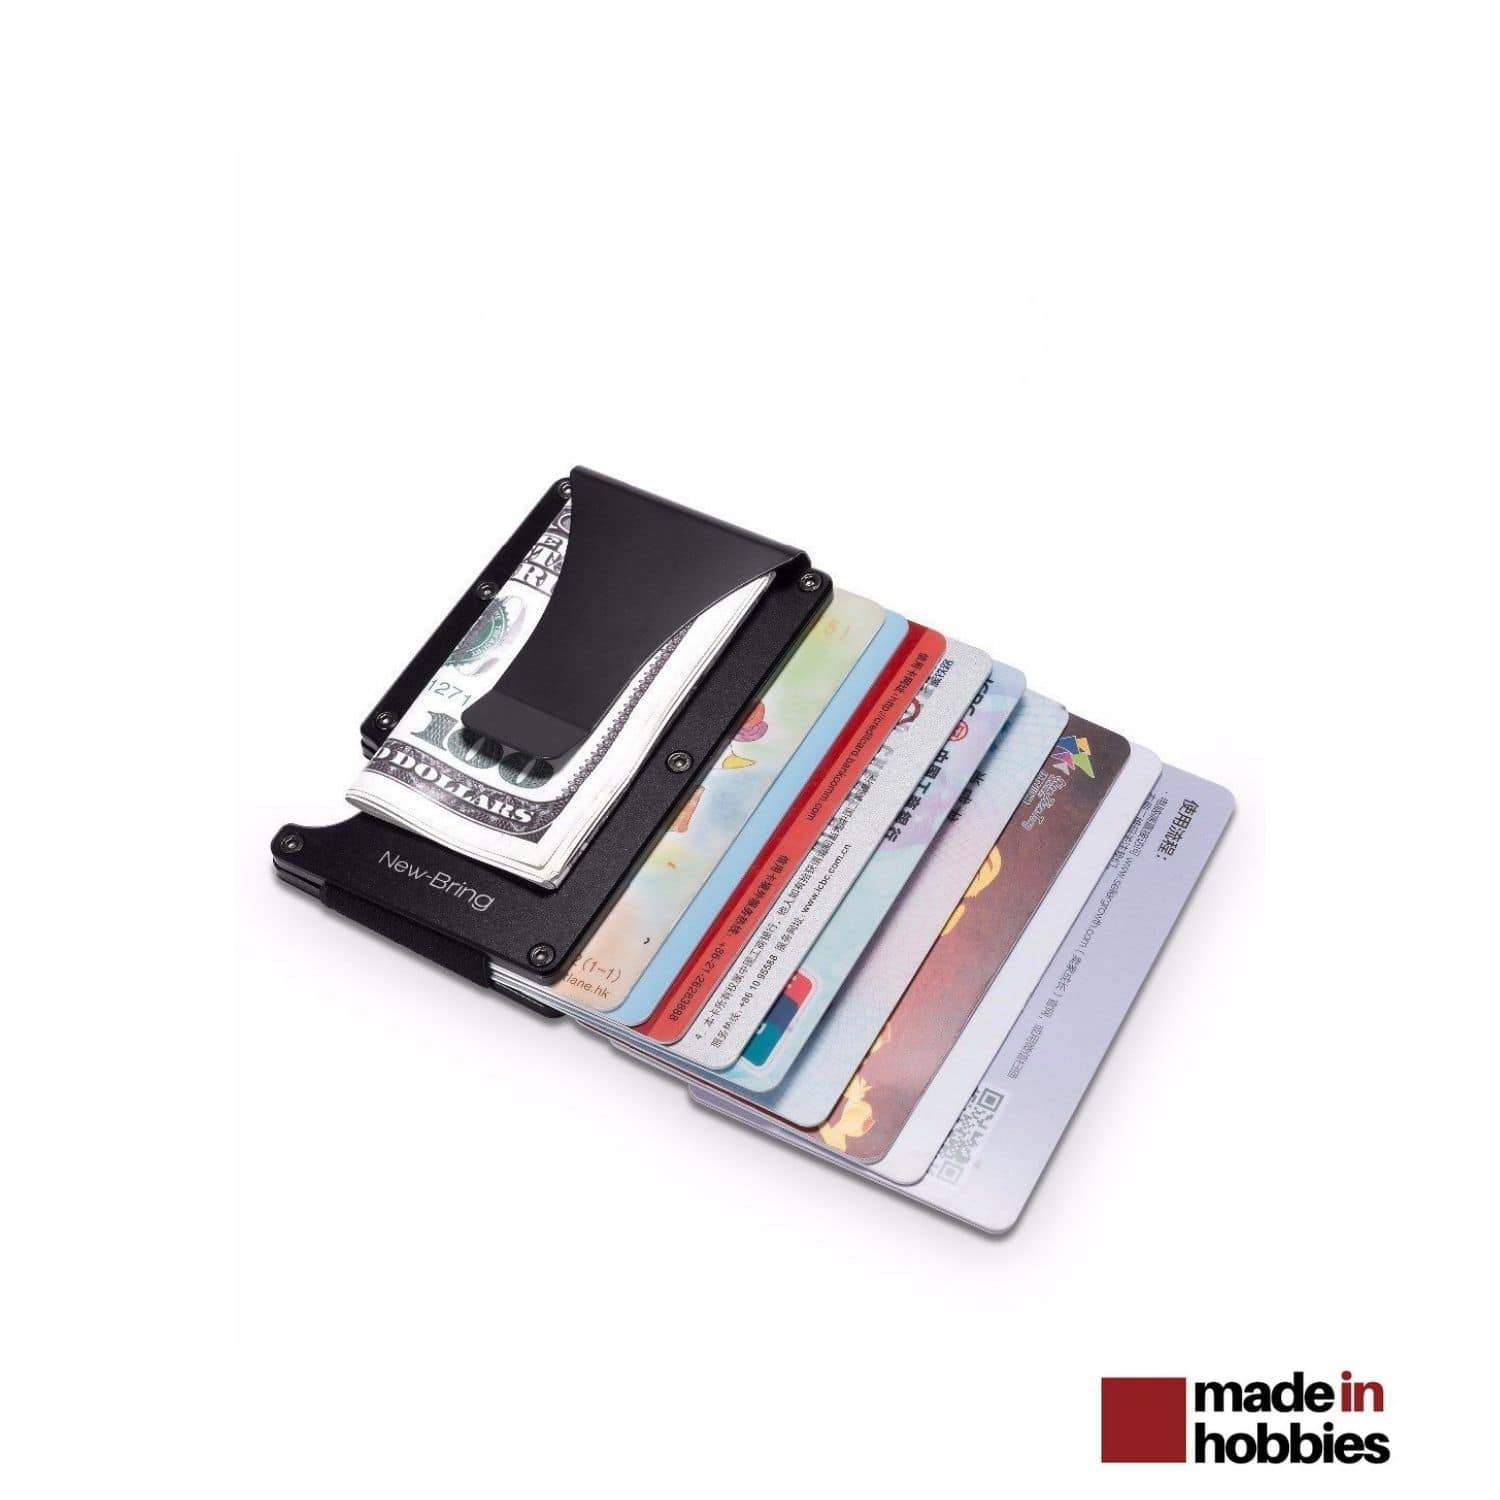 Porte-cartes rfid avec pince à billets : tous les produits